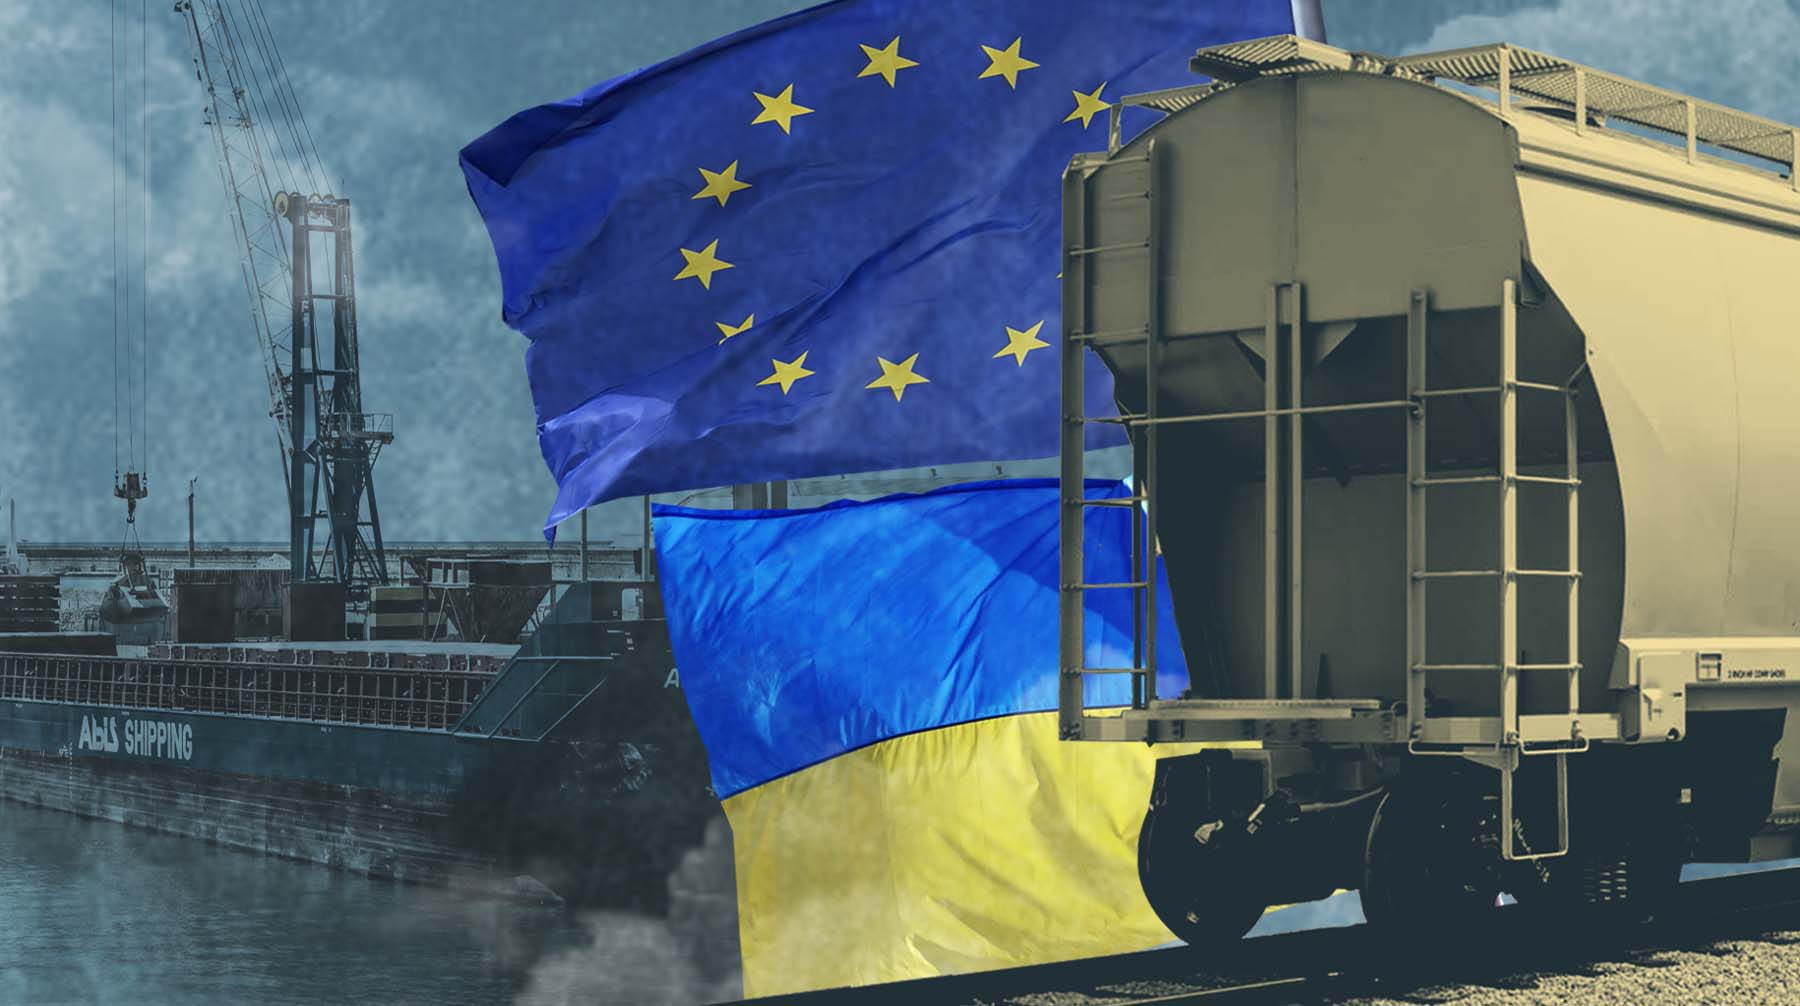 Вице-президент Зернового союза Александр Корбут рассказал о неготовности восточноевропейских железных дорог к транзиту Коллаж: Daily Storm